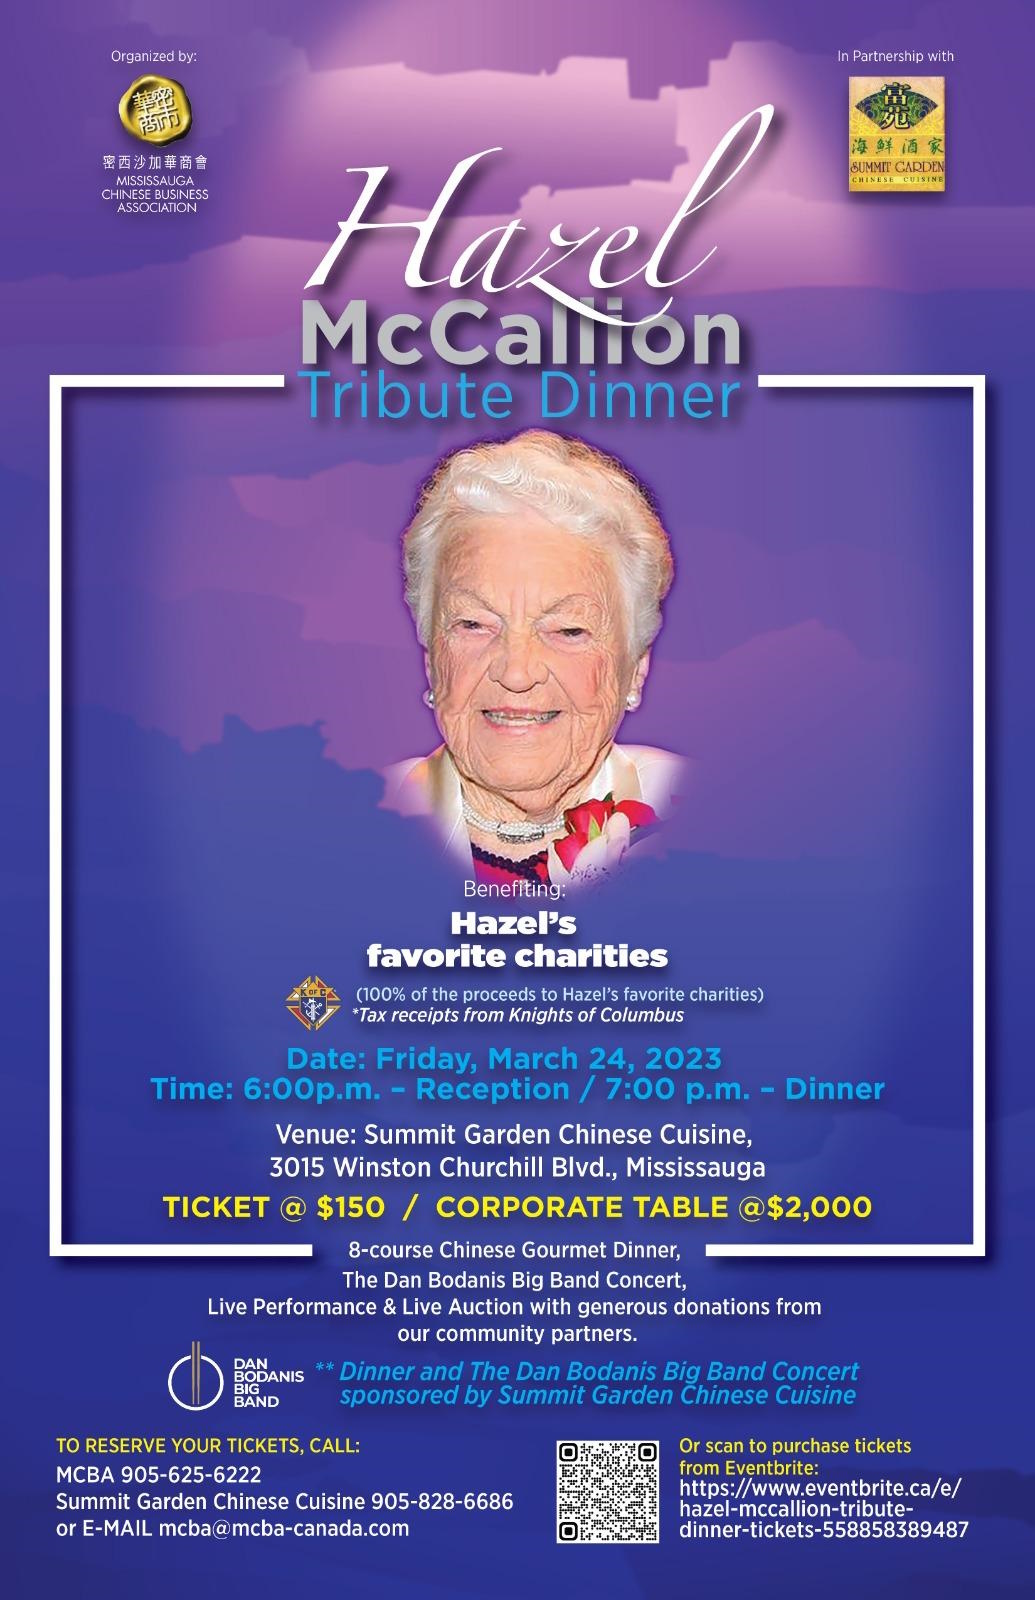 Hazel McCallion Tribute Dinner at Summit Garden 24 Mar 2023